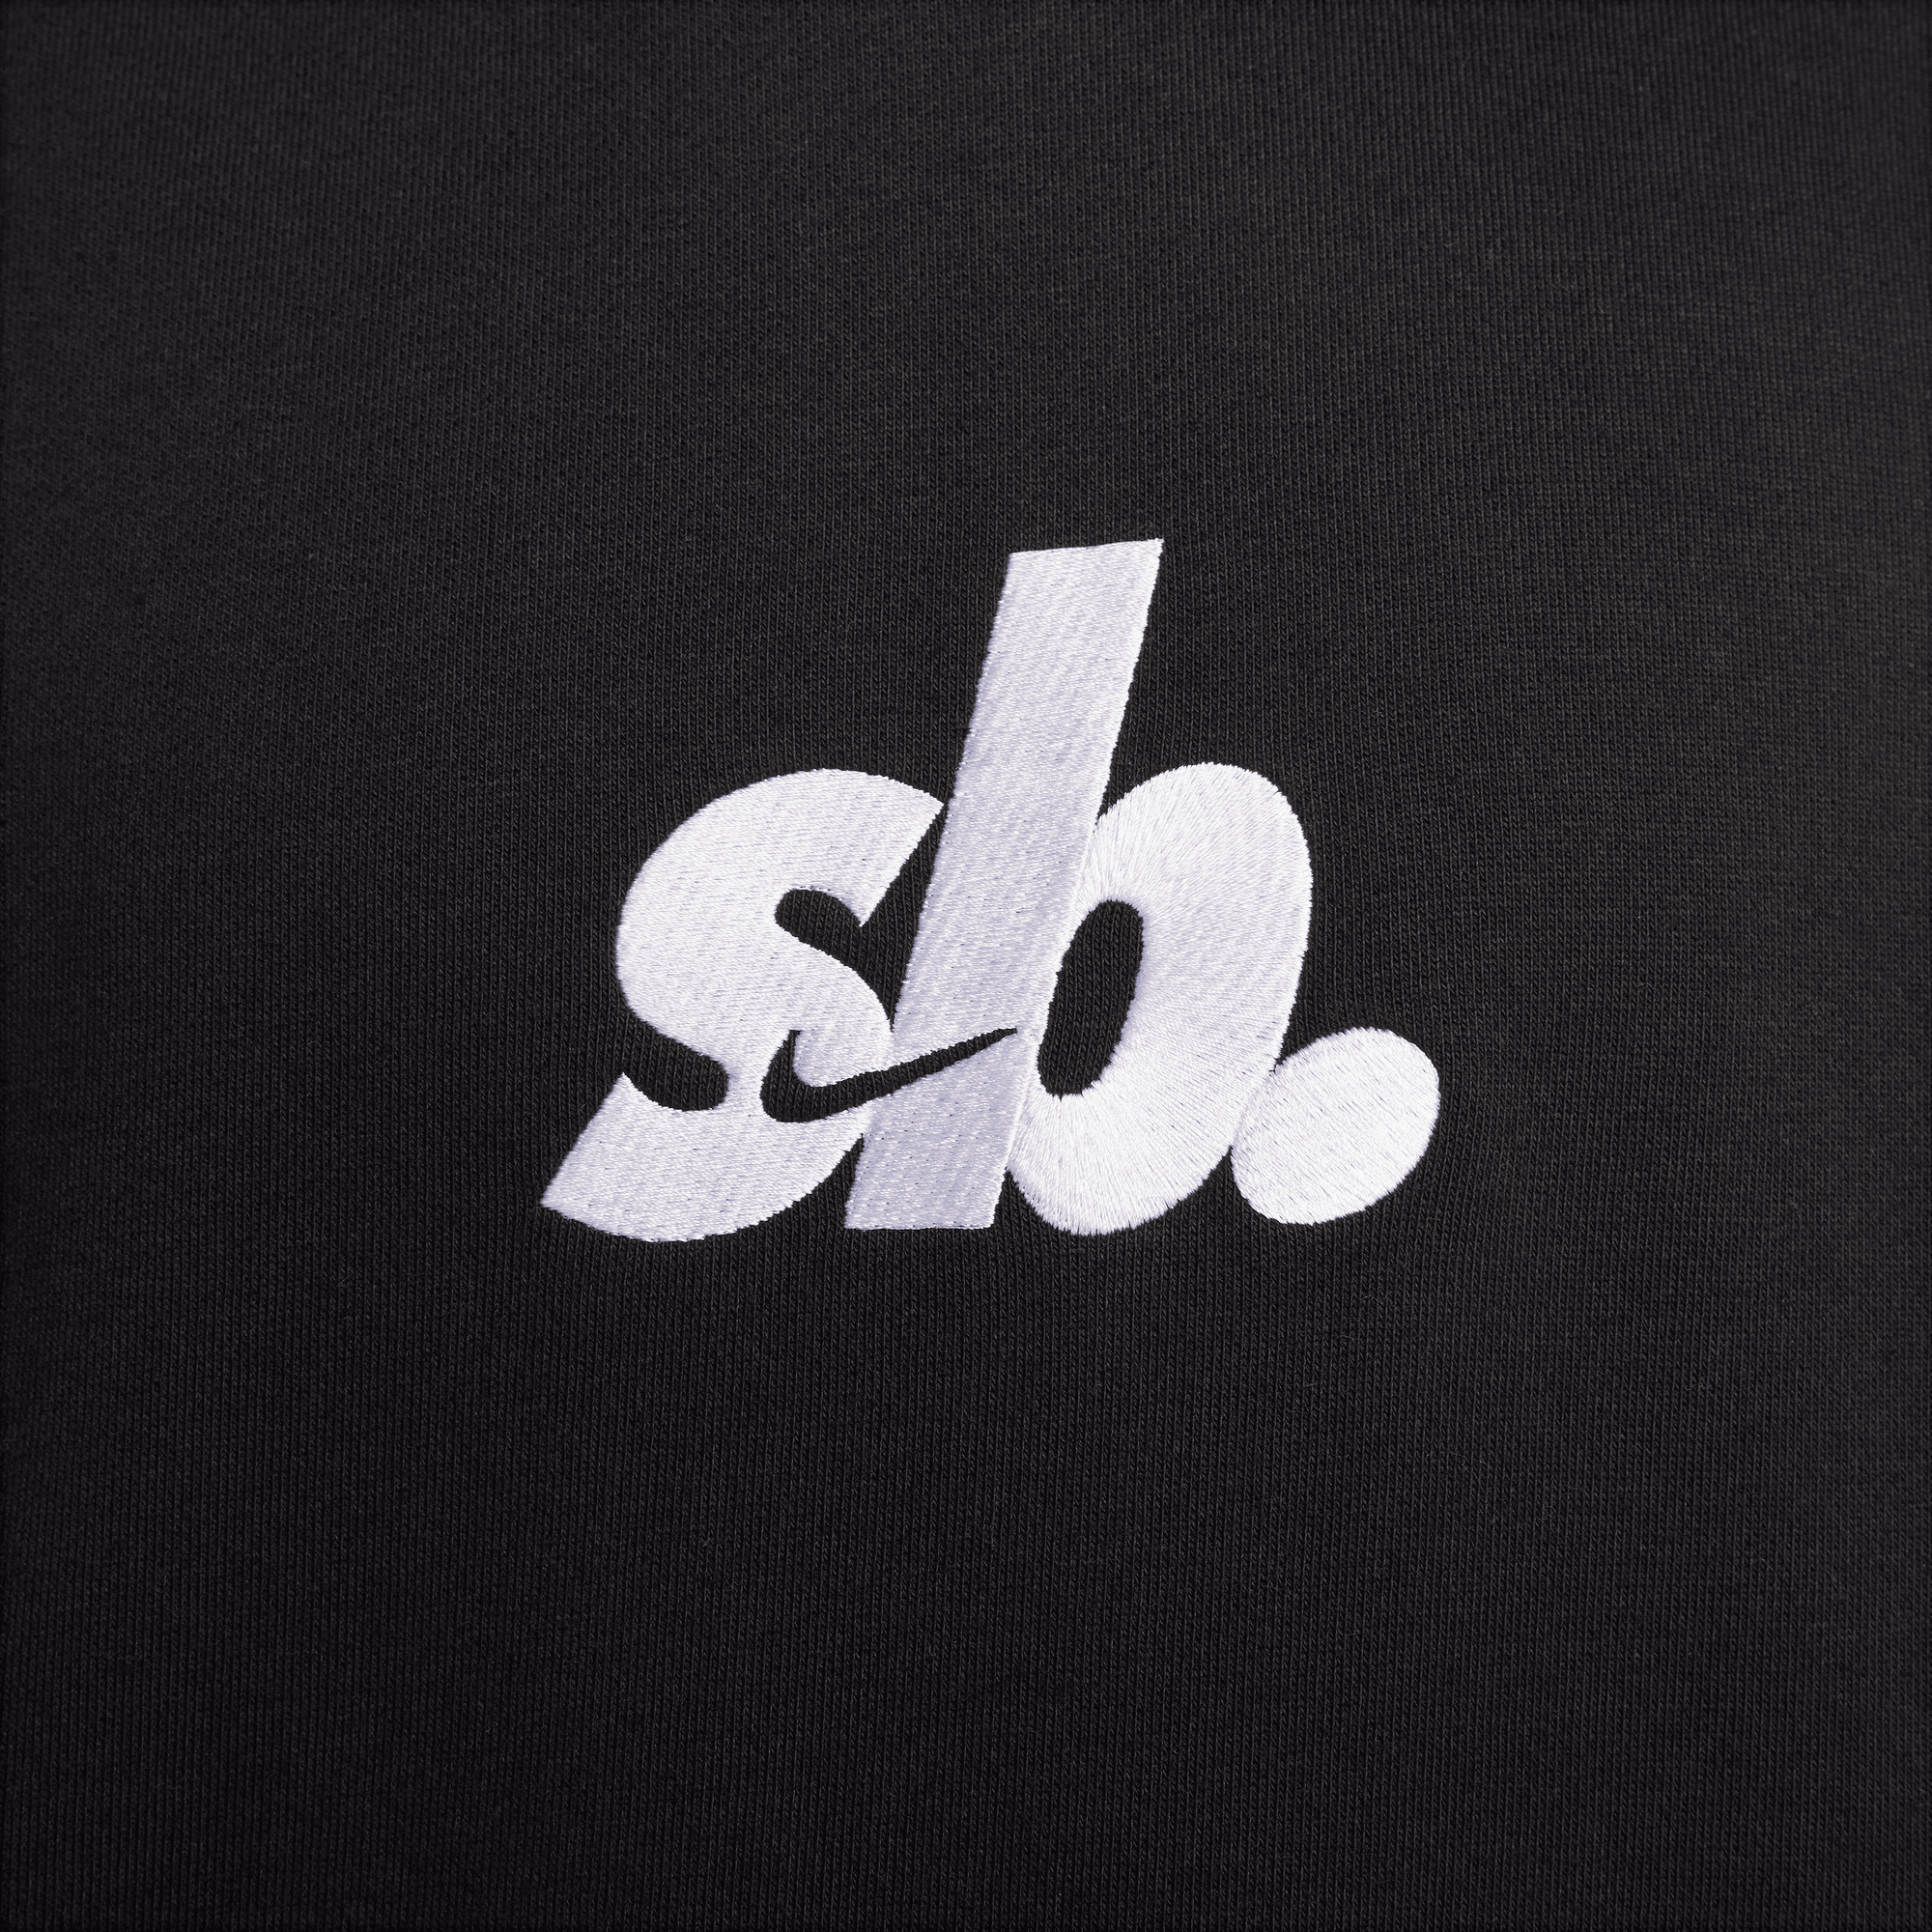 Black/White SB Nike Sb Hoodie Detail